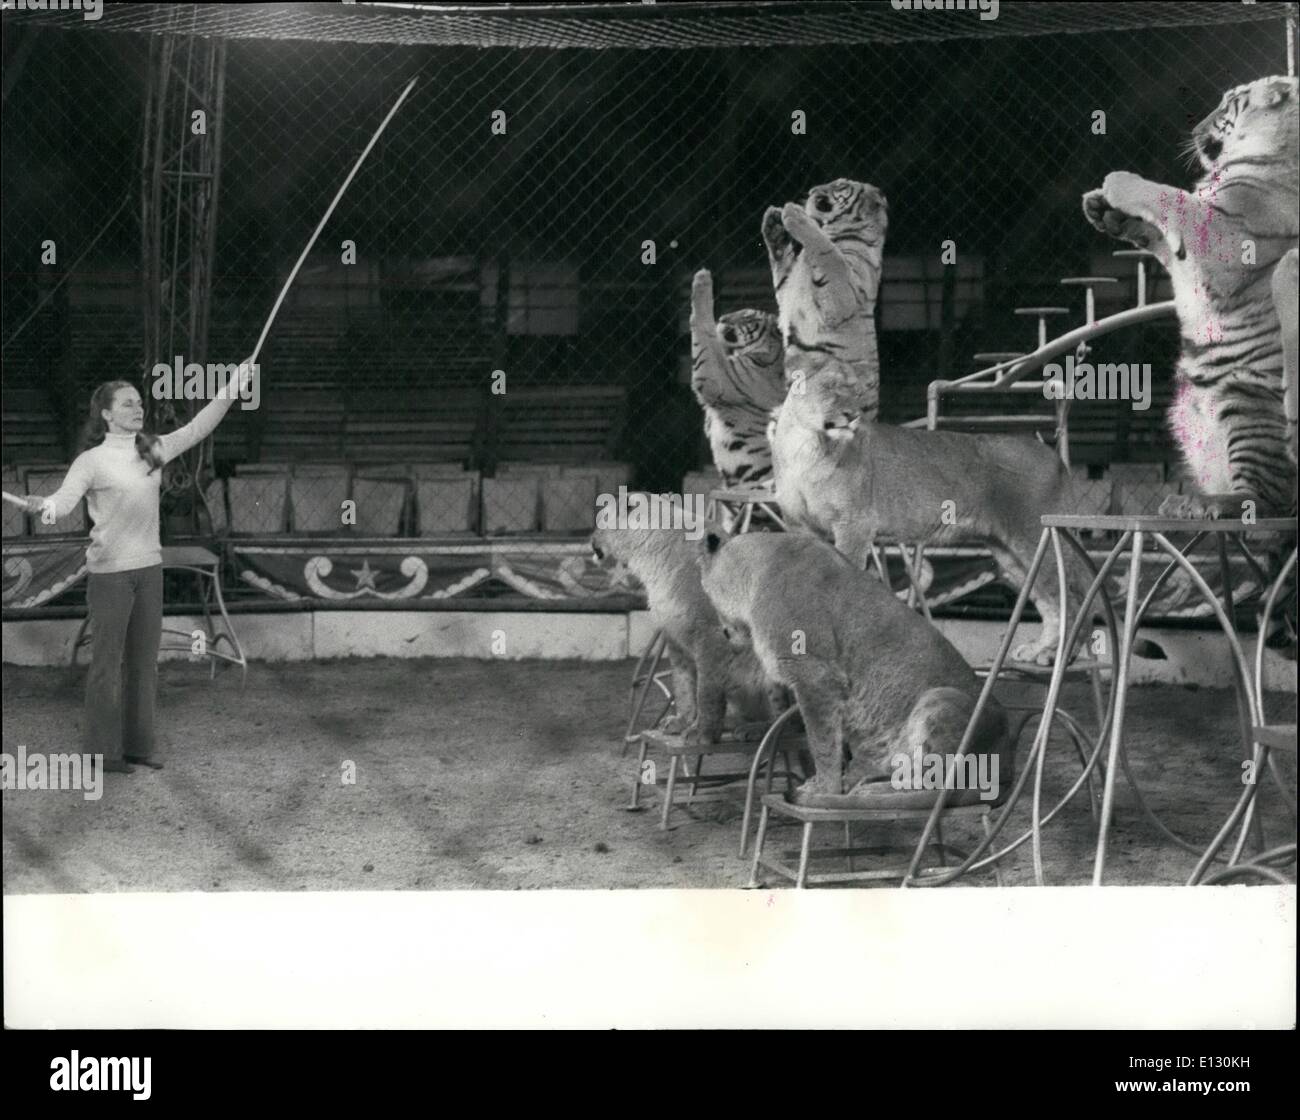 Febbraio 26, 2012 - Mary's Circus è tornato in città:' Chipperfield's" è per milioni sinonimo di circo, ma Mary Chipperfield Circus è distinto e separato dal suo zio di Dick circus - quello che la maggior parte di noi associa il nome con.la confusione ha infatti portato ad una grave frattura della famiglia e Maria ha dovuto sospendere le attività di circo due anni fa, ma ora è tornato di nuovo - La chiamata dell'anello è irresistibile per un Chipperfield! Il circus - uno spettacolare show con oltre 50 animali e circa 40 artisti, compresi i clown, trapeze atti, etc Foto Stock